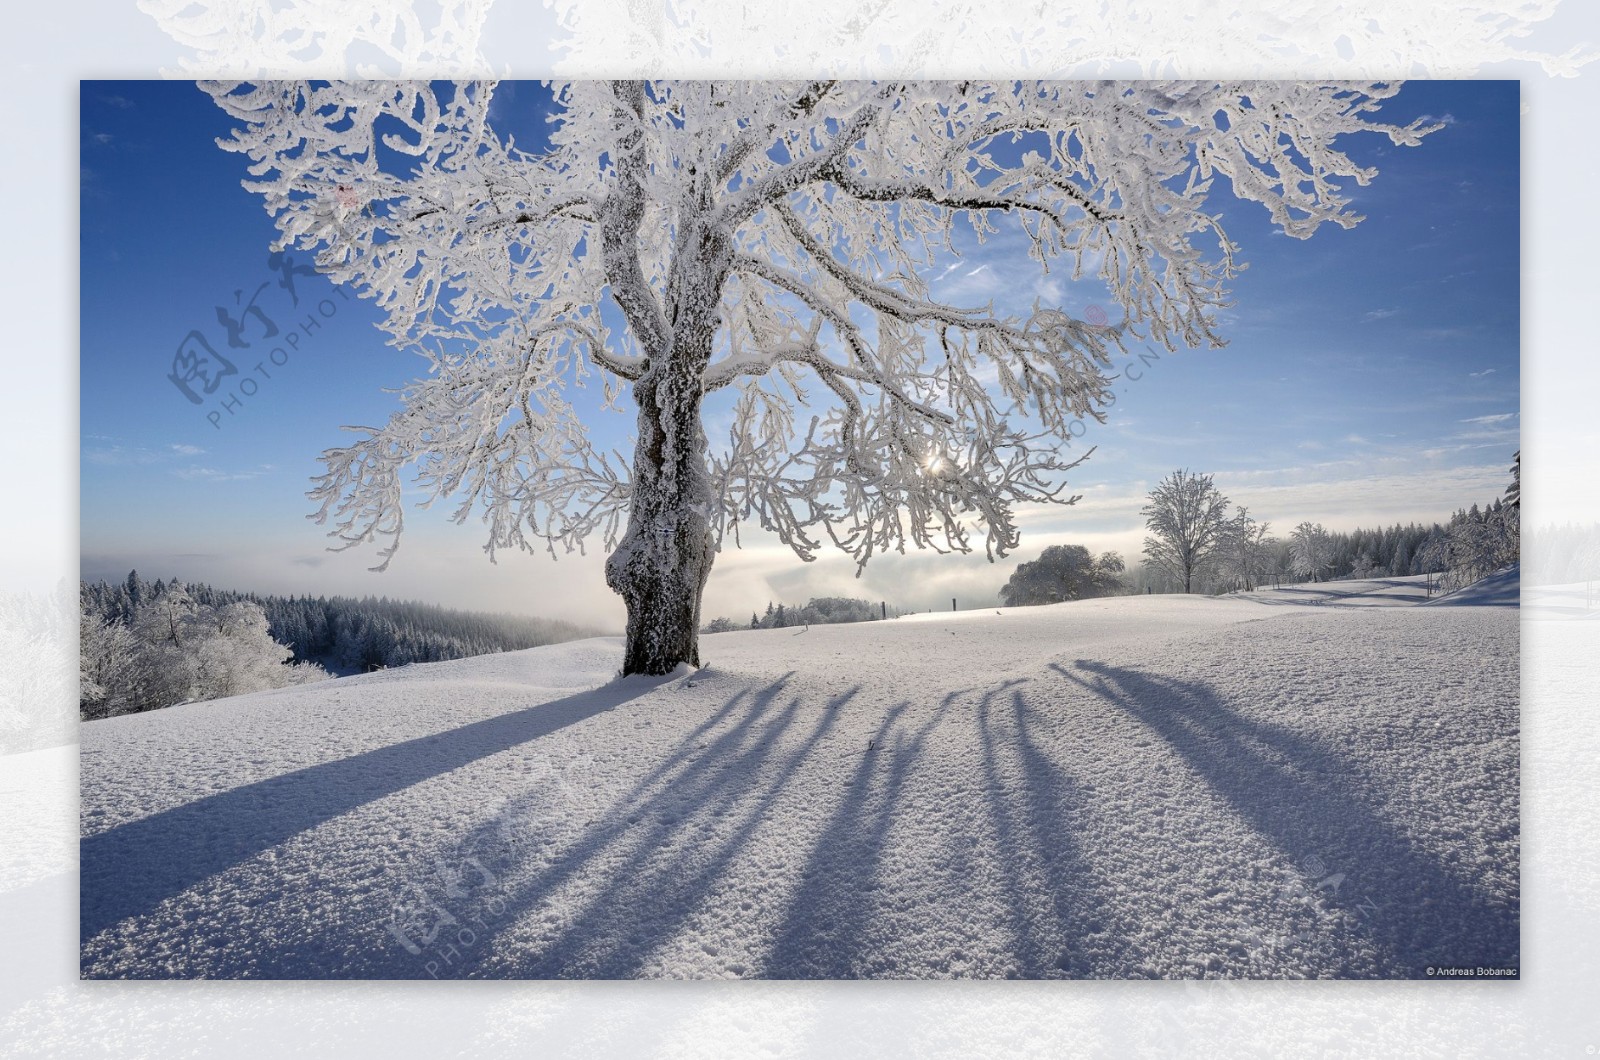 冬天阳光下的树挂和厚厚的雪